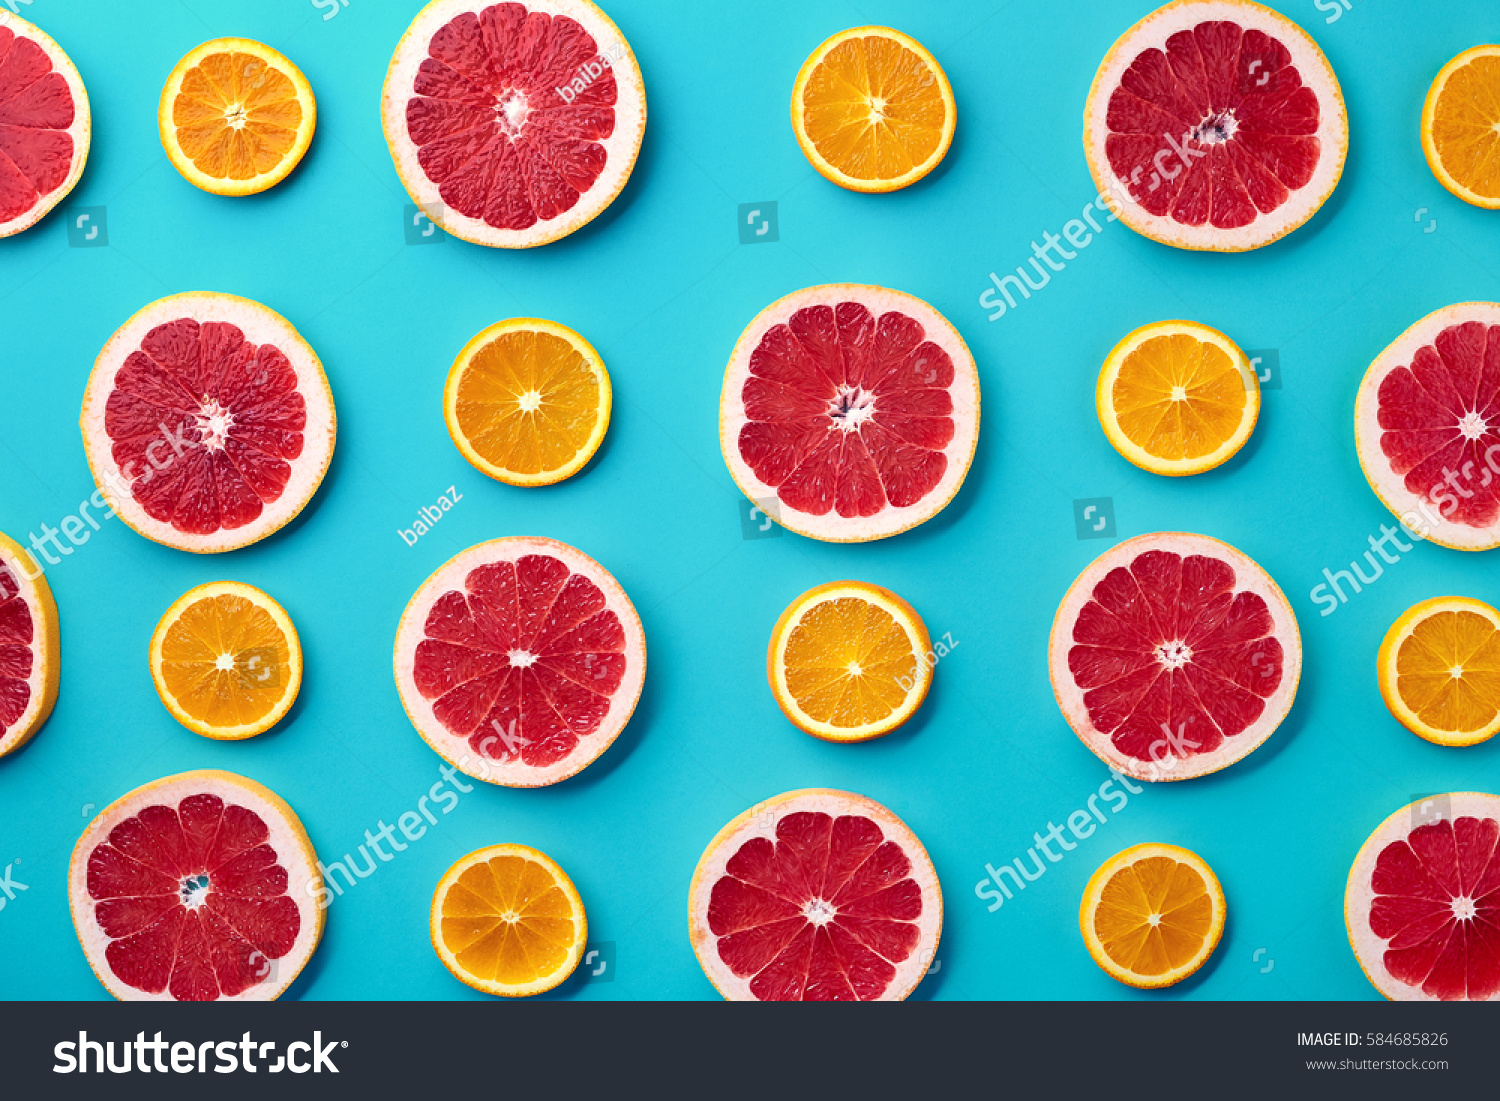 青の背景に新鮮なオレンジとグレープフルーツのスライスのカラフルなフルーツパターン 平面図から の写真素材 今すぐ編集